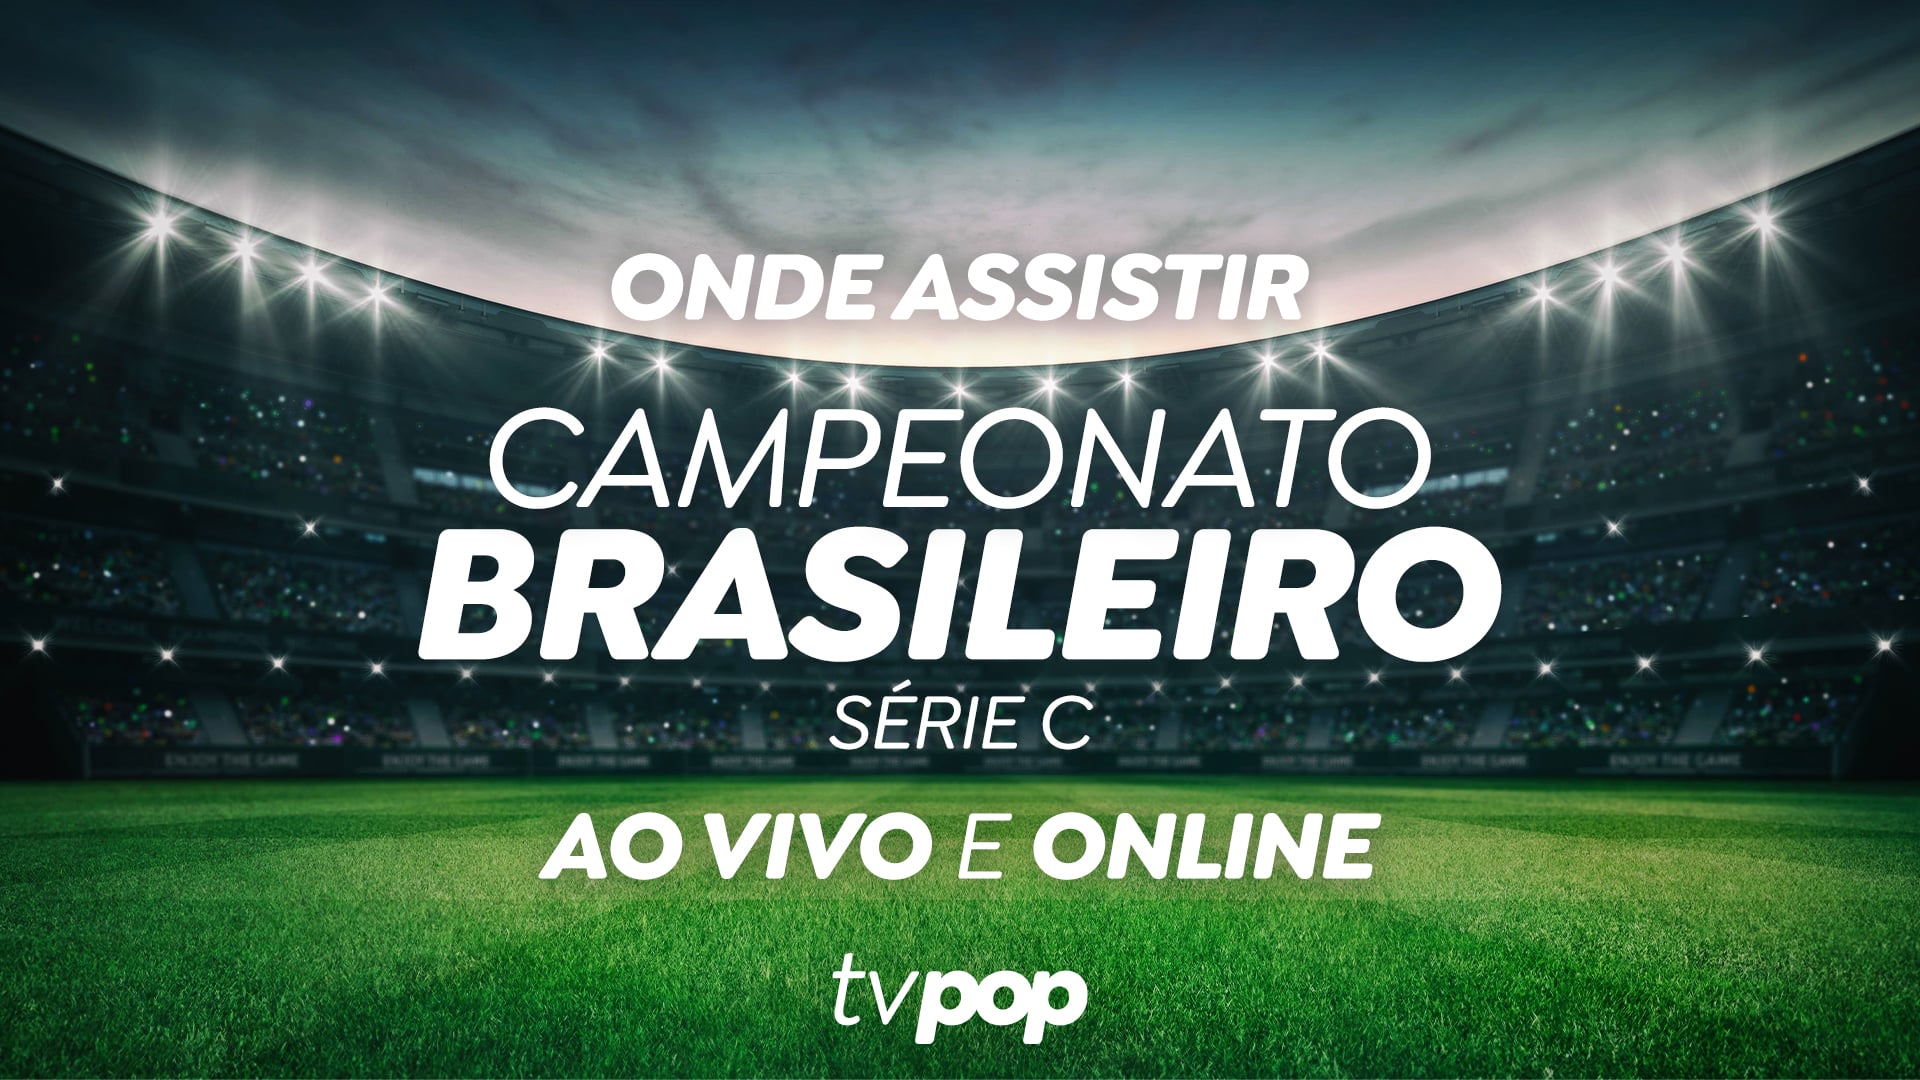 Como assistir São José x Volta Redonda AO VIVO pela Série C